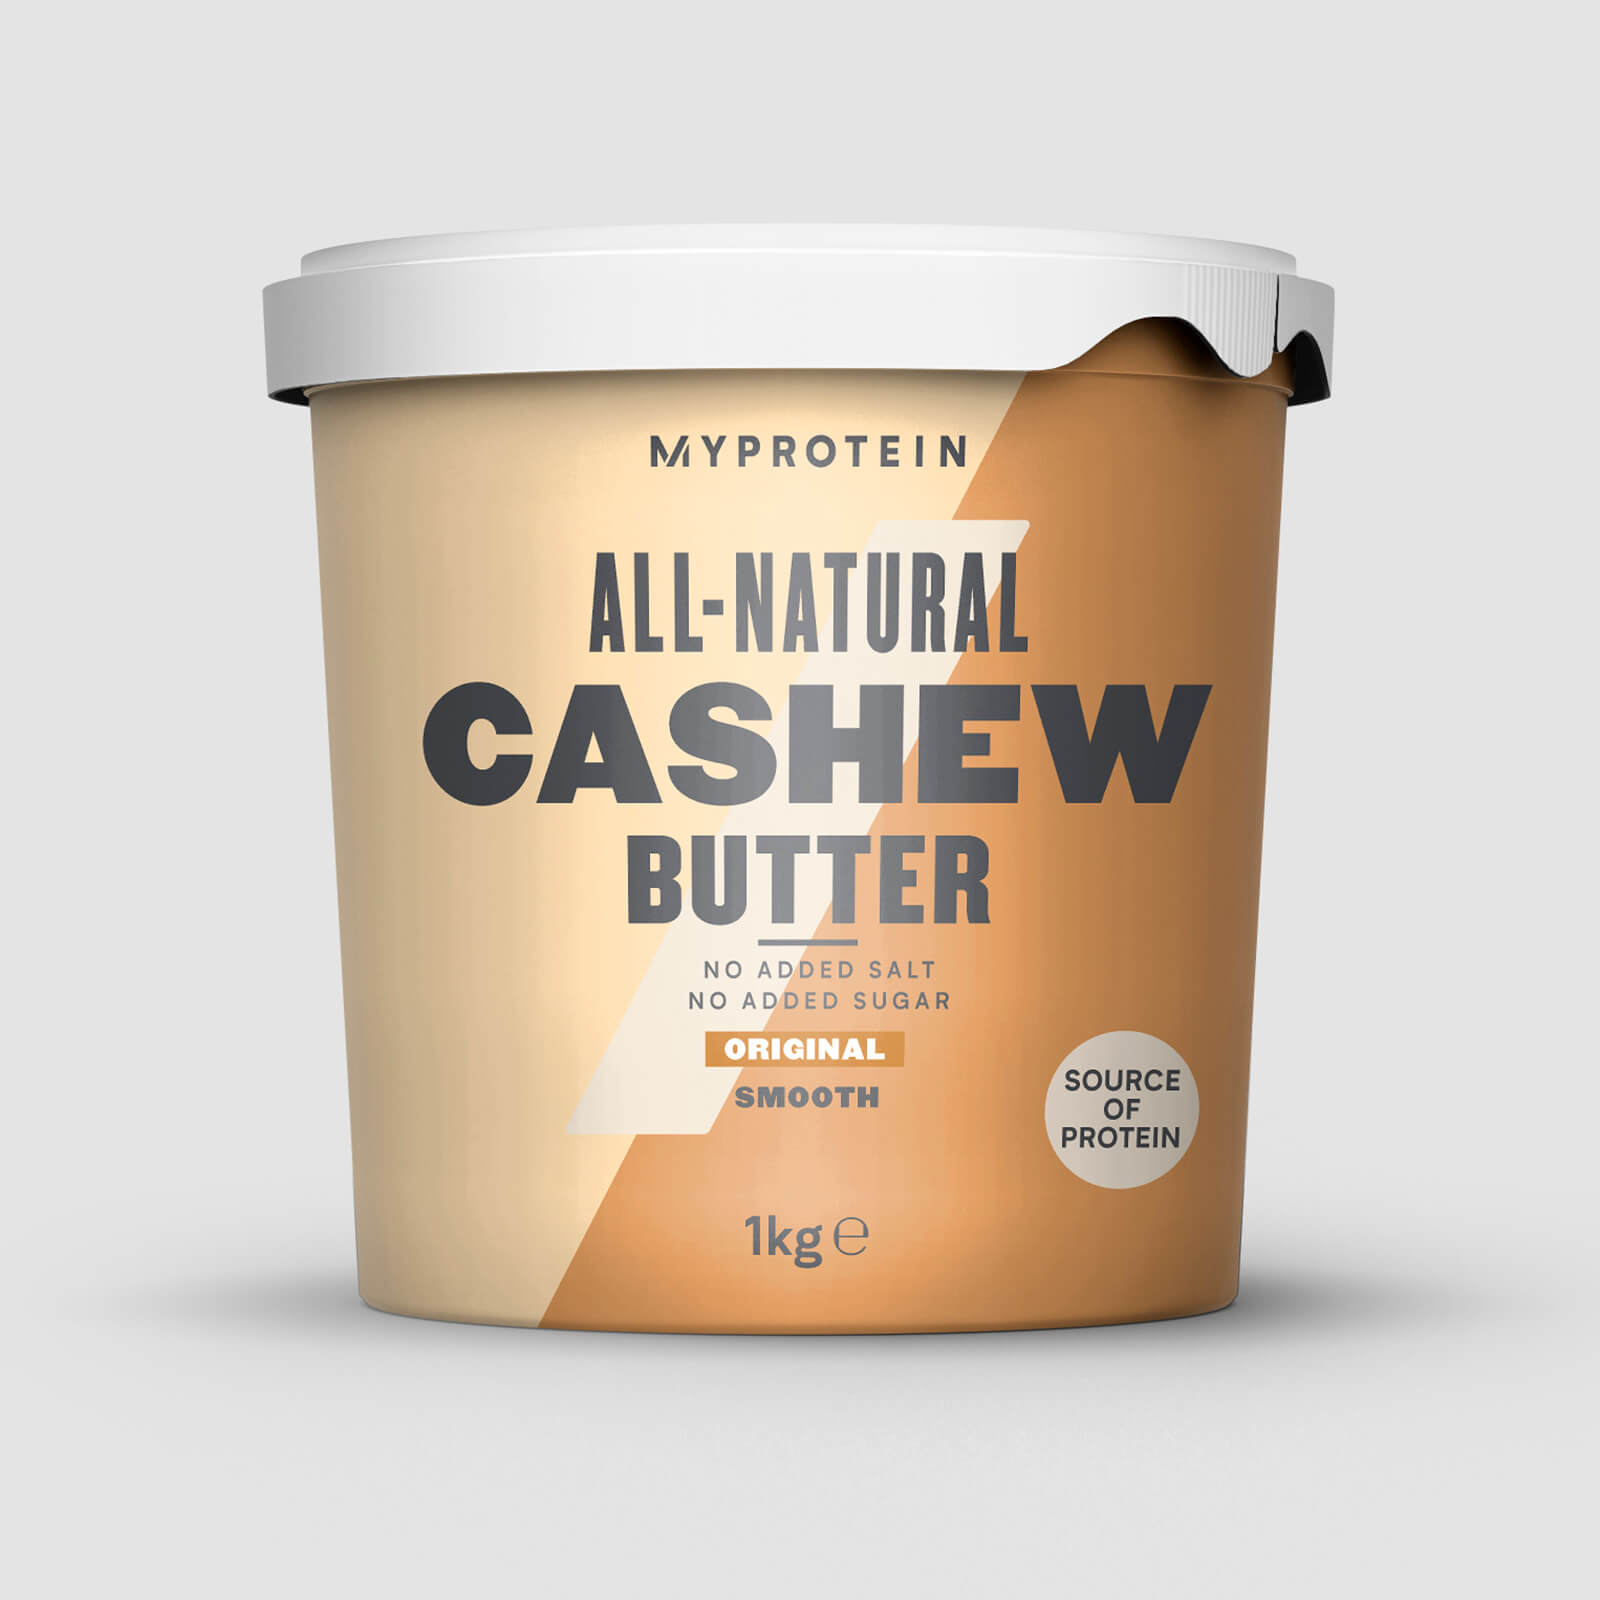 Myprotein Natuurlijke Cashew Boter - 1kg - Original - Smooth